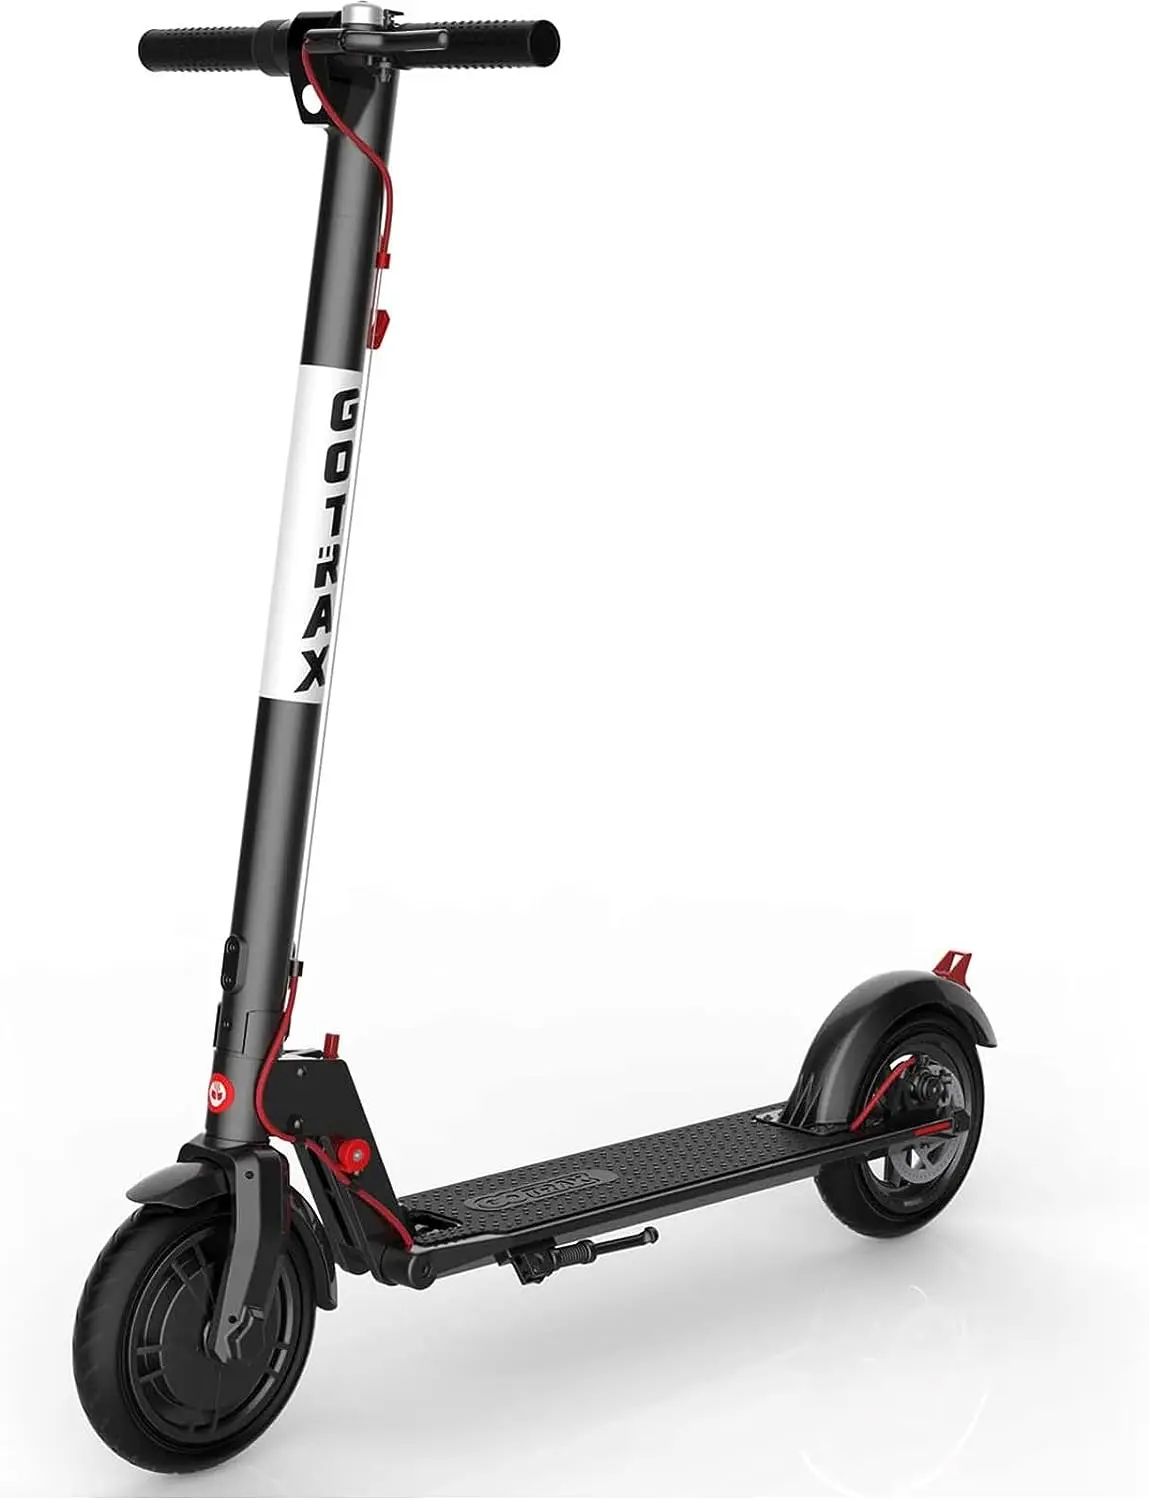 

Для взрослых, спортивный скутер GXL V2, 8,5 дюйма, пневматические шины, максимальная скорость 12 миль/ч, миль/ч, EABS и Задний дисковый тормоз с Круиз-контролем мм